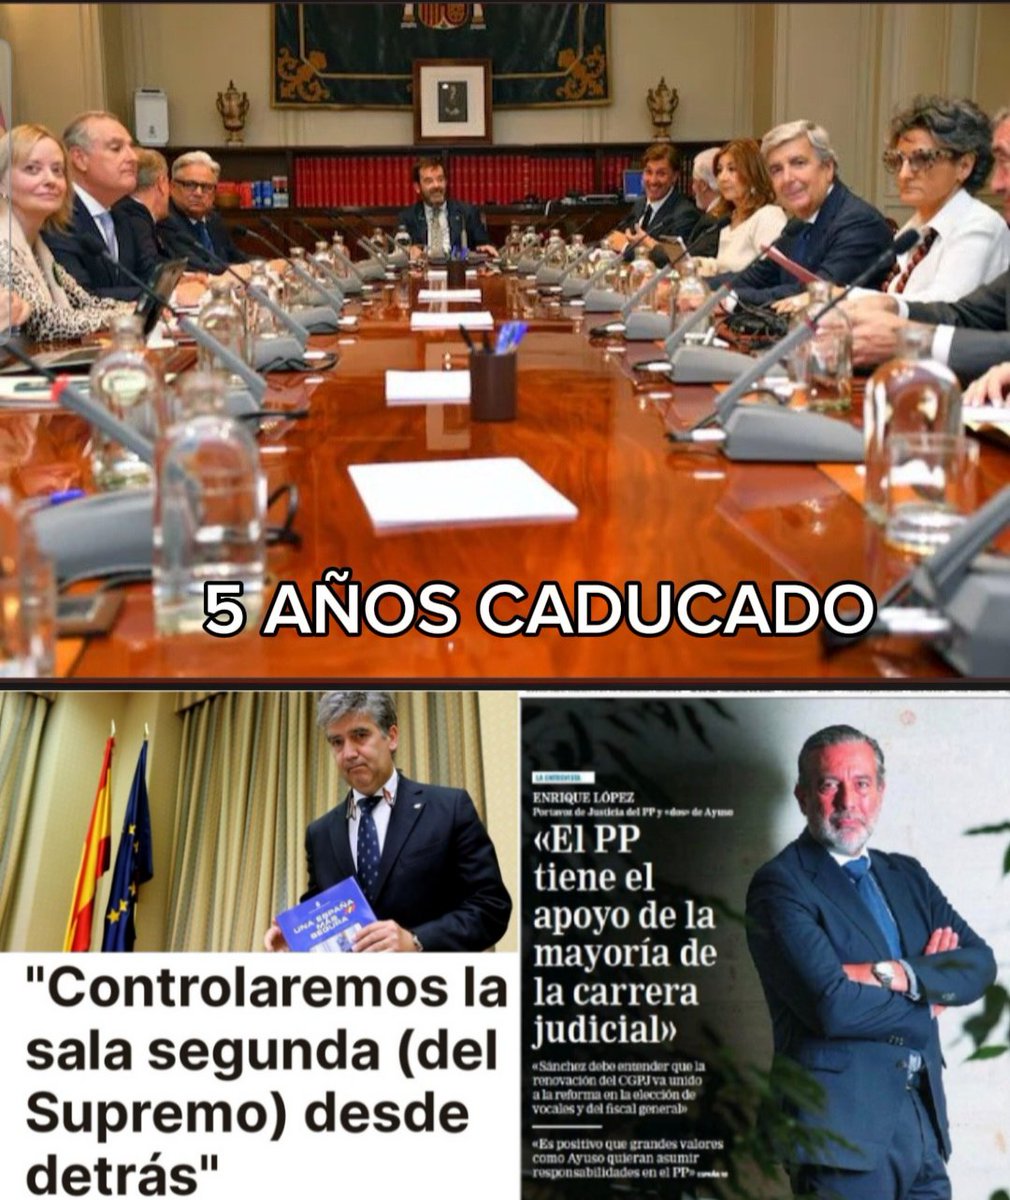 @_InakiLopez_ 🌹🌹🌹🌹UN JUEZ CORRUPTO BIEN PAGADO 🤬🤬🤬🤬
¡RENOVACION CGPJ YA! 🤬🤬
#PPCorrupto #PPOrganizacionCriminal
#PPDelincuentesHabituales 🤬🤬🤬🤬🤮🤮🤮🤮